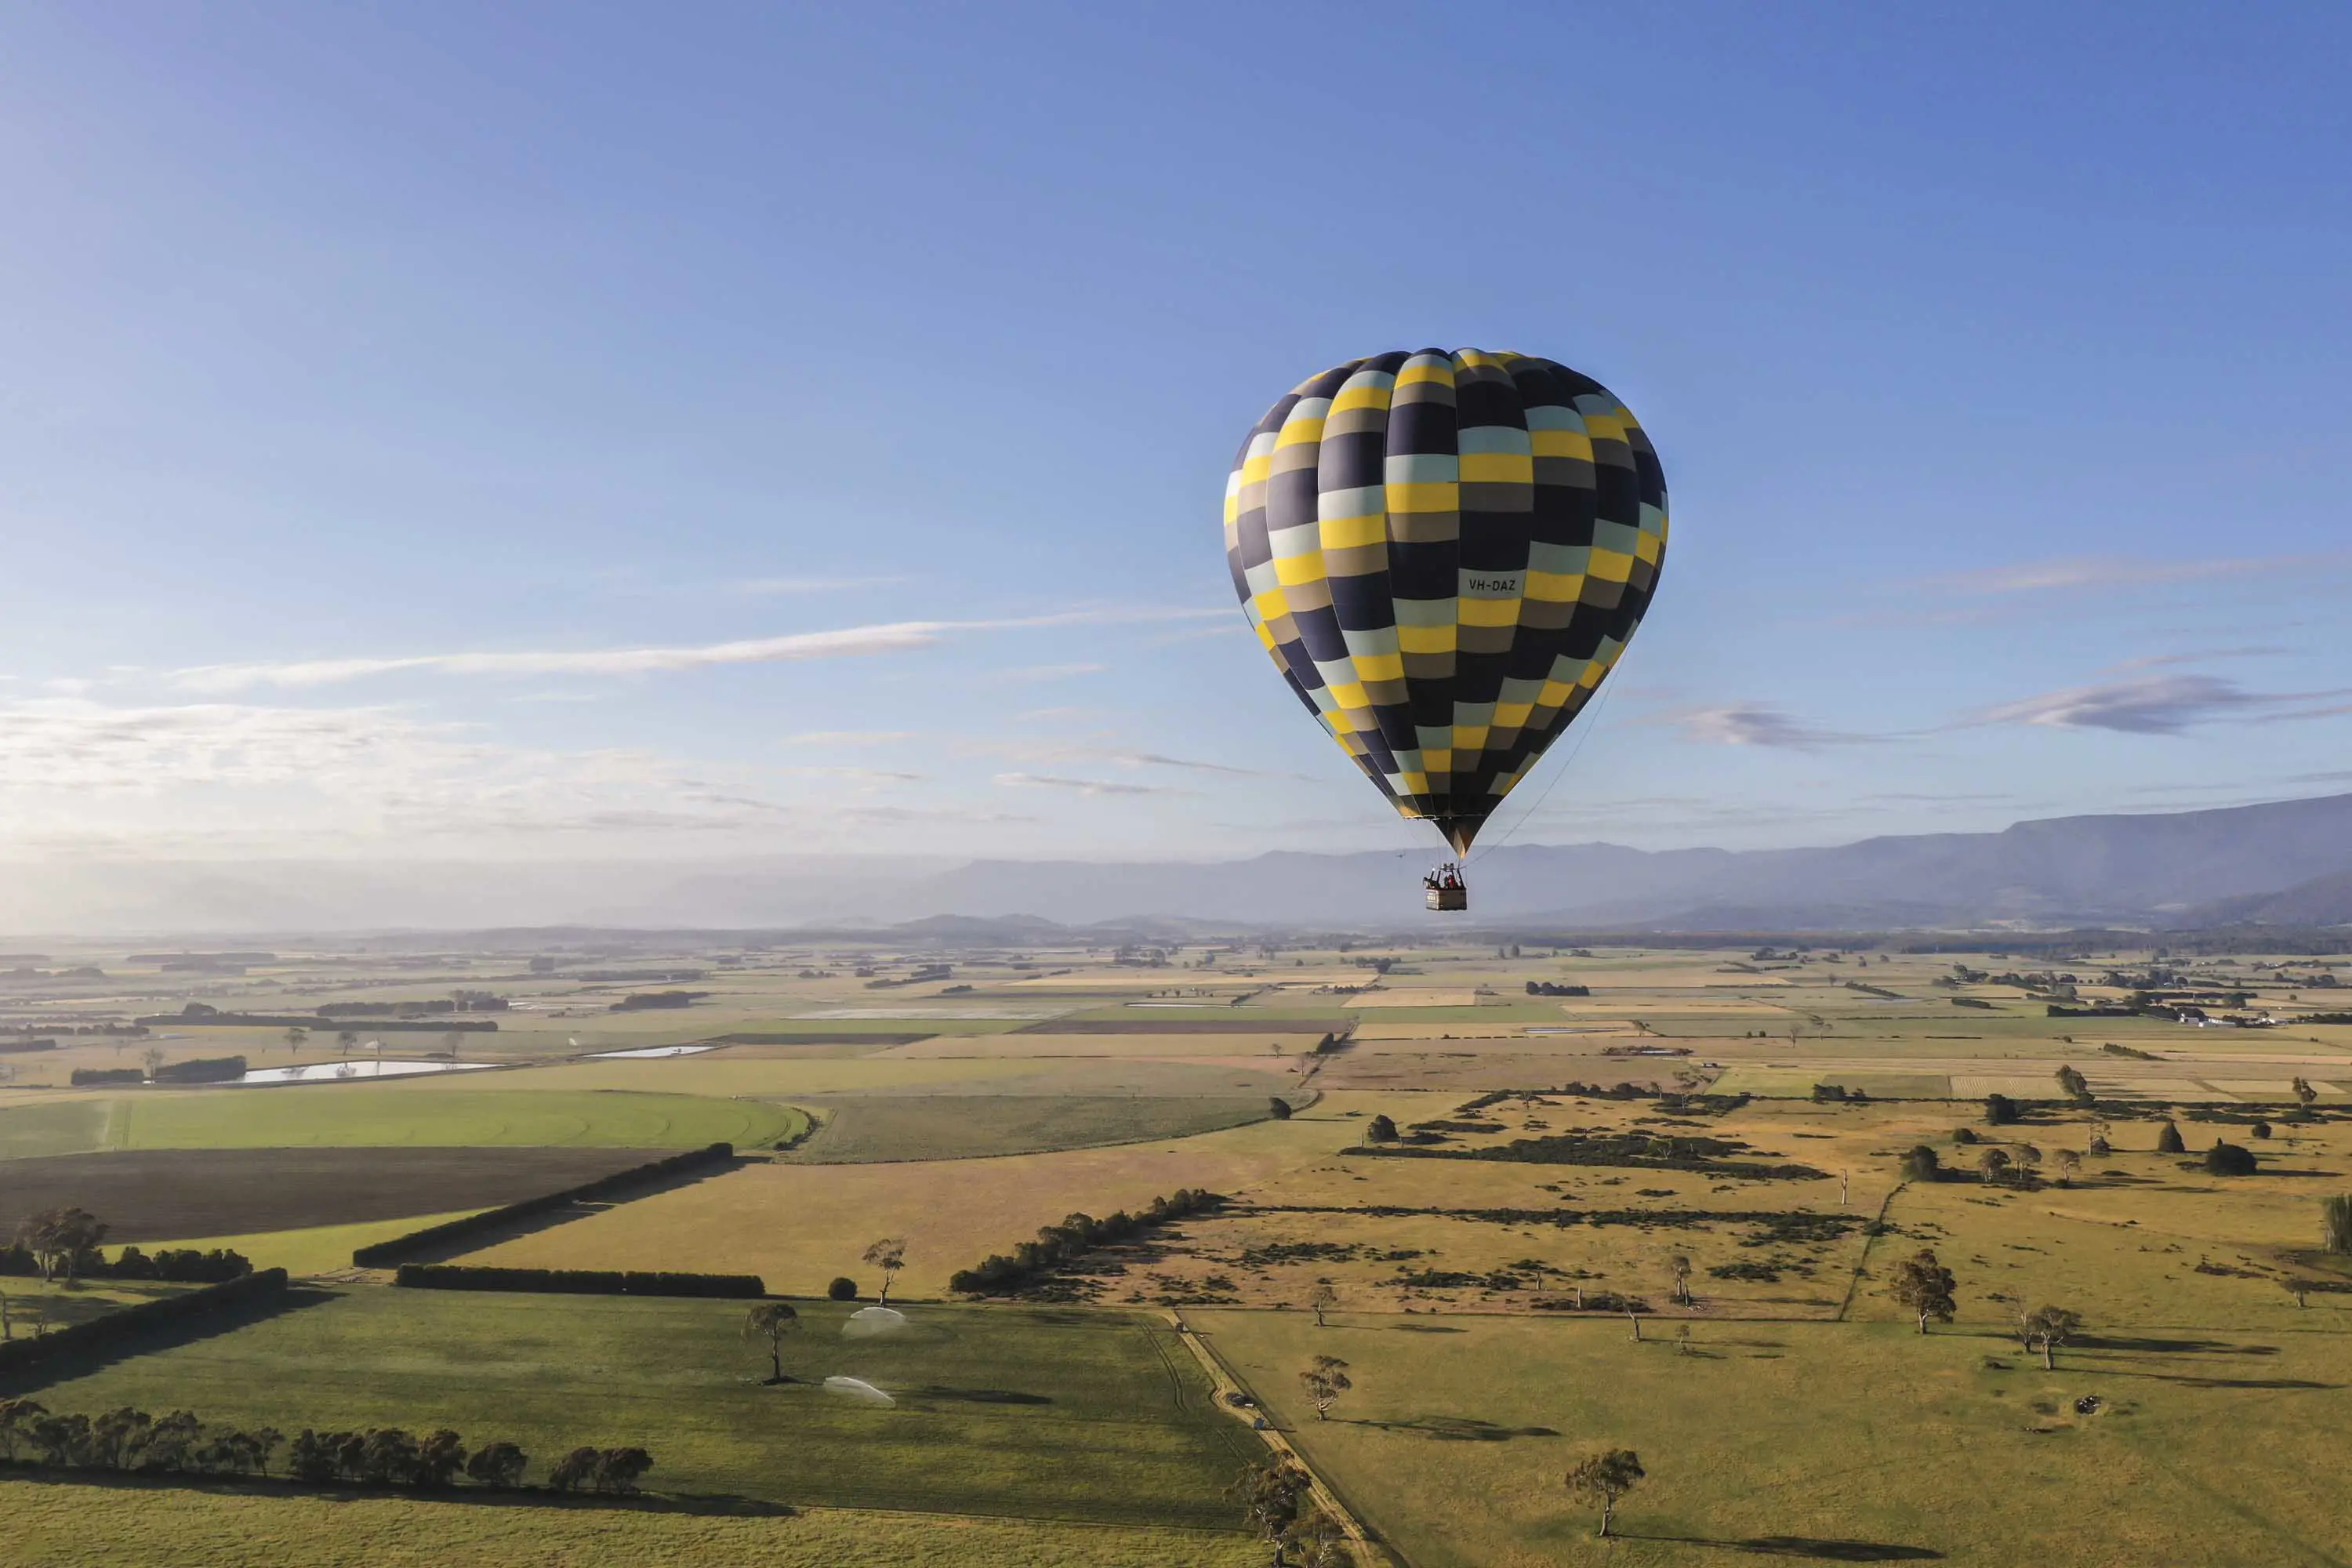 An enormous multicoloured balloon floats over farm land on a clear, sunny day.